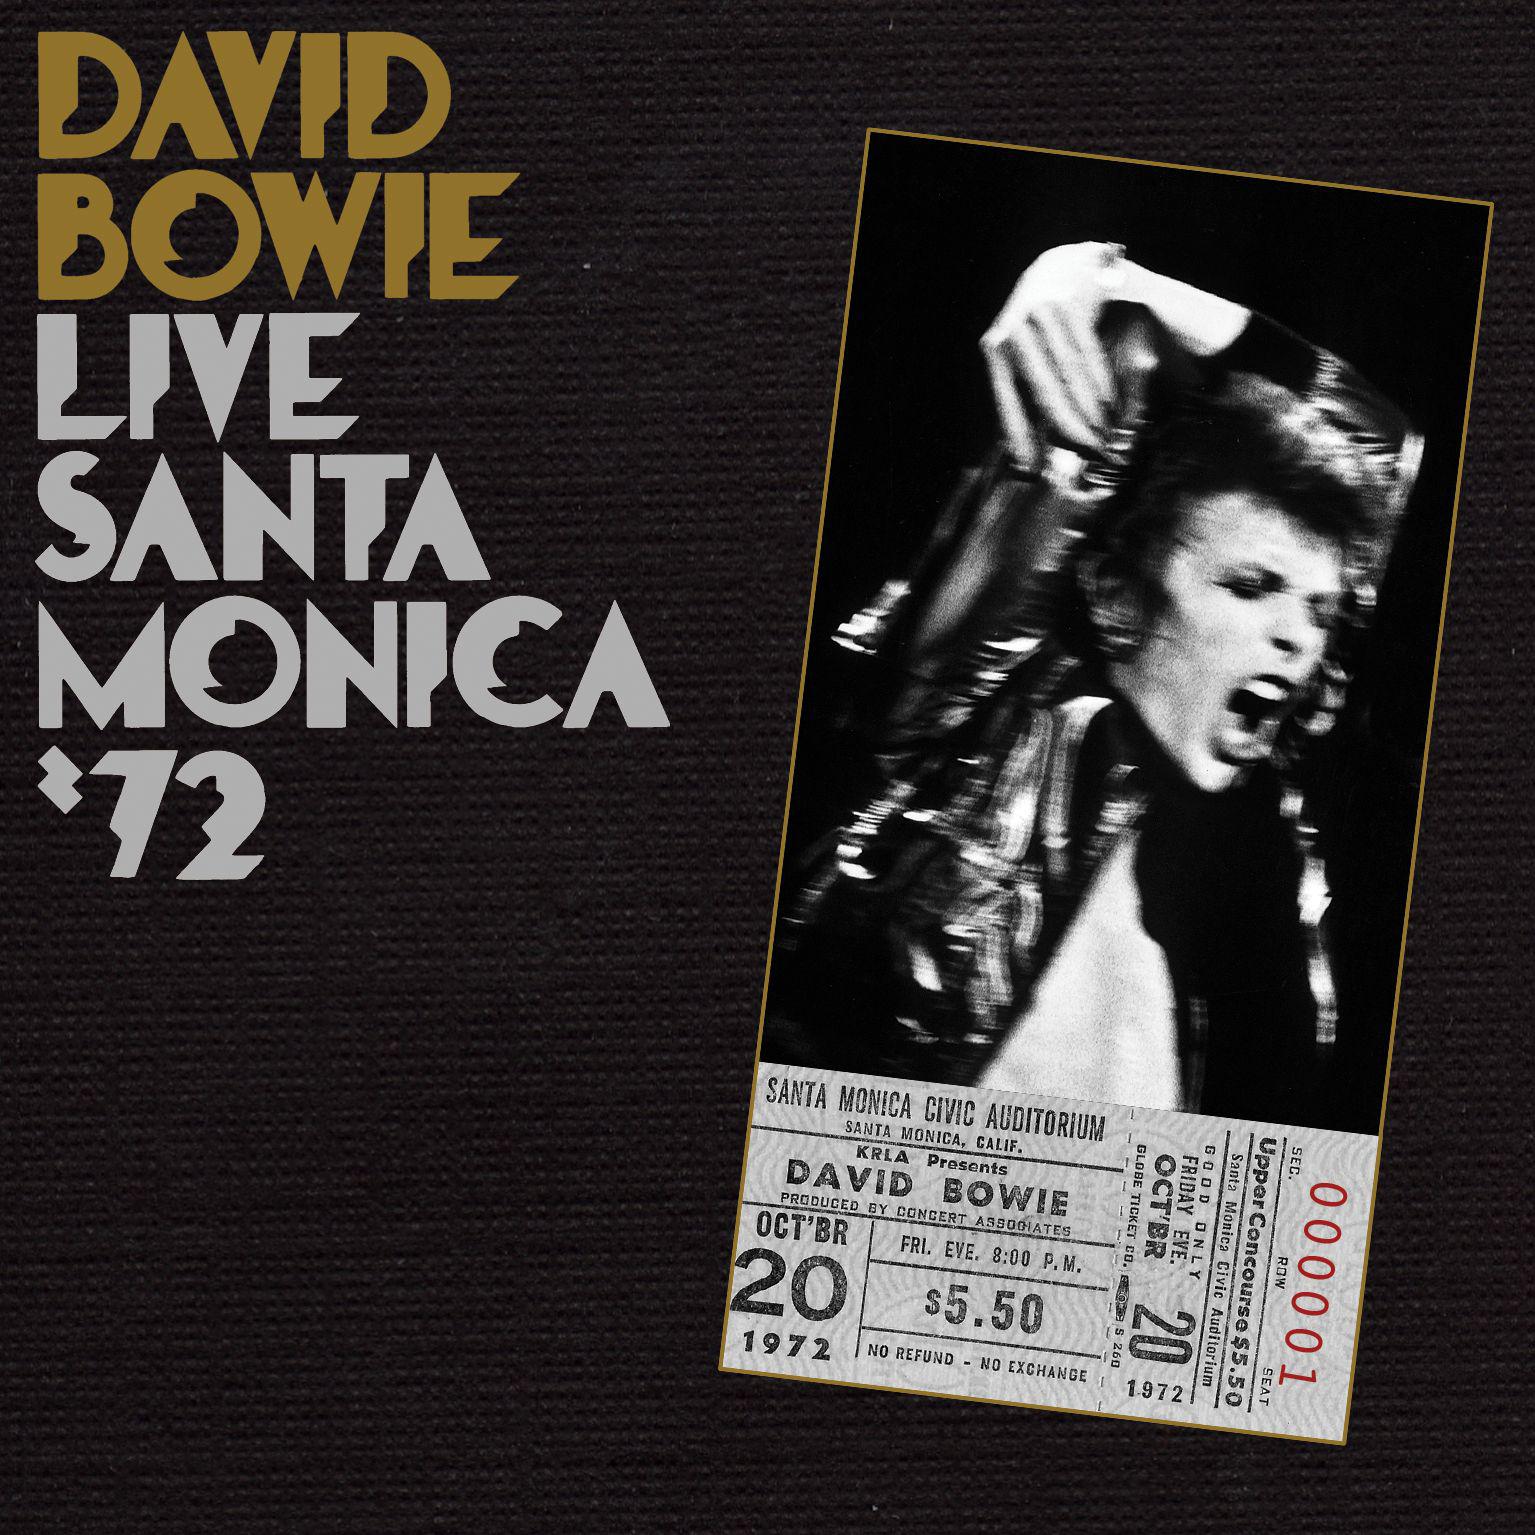 Live In Santa Monica '72